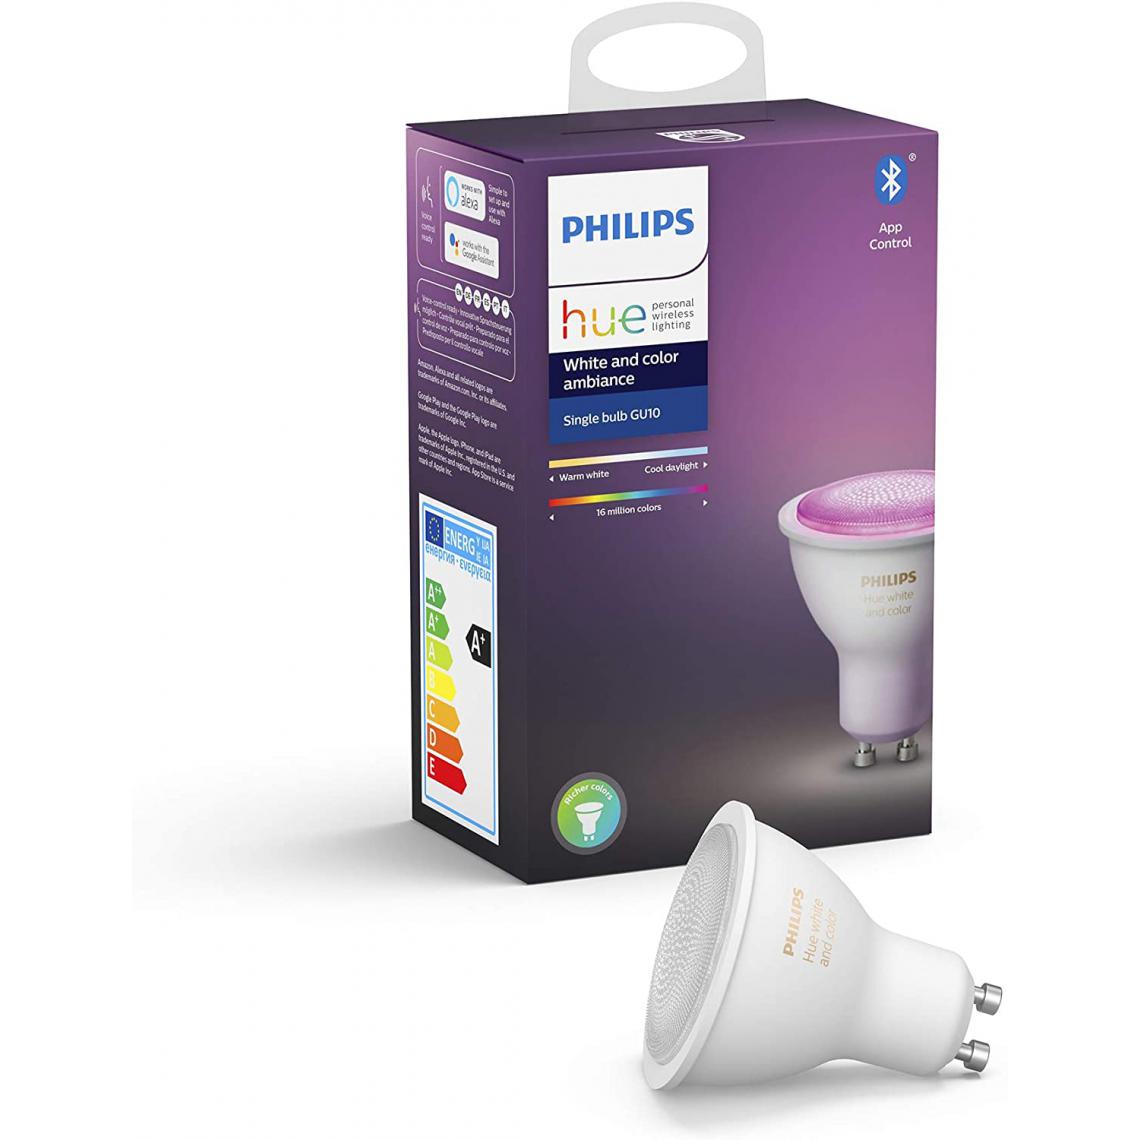 Philips - ampoule LED Connectée White & Color Ambiance GU10 Compatible Bluetooth avec fonctionne avec Alexa [Classe énergétique A+] - Lampe connectée